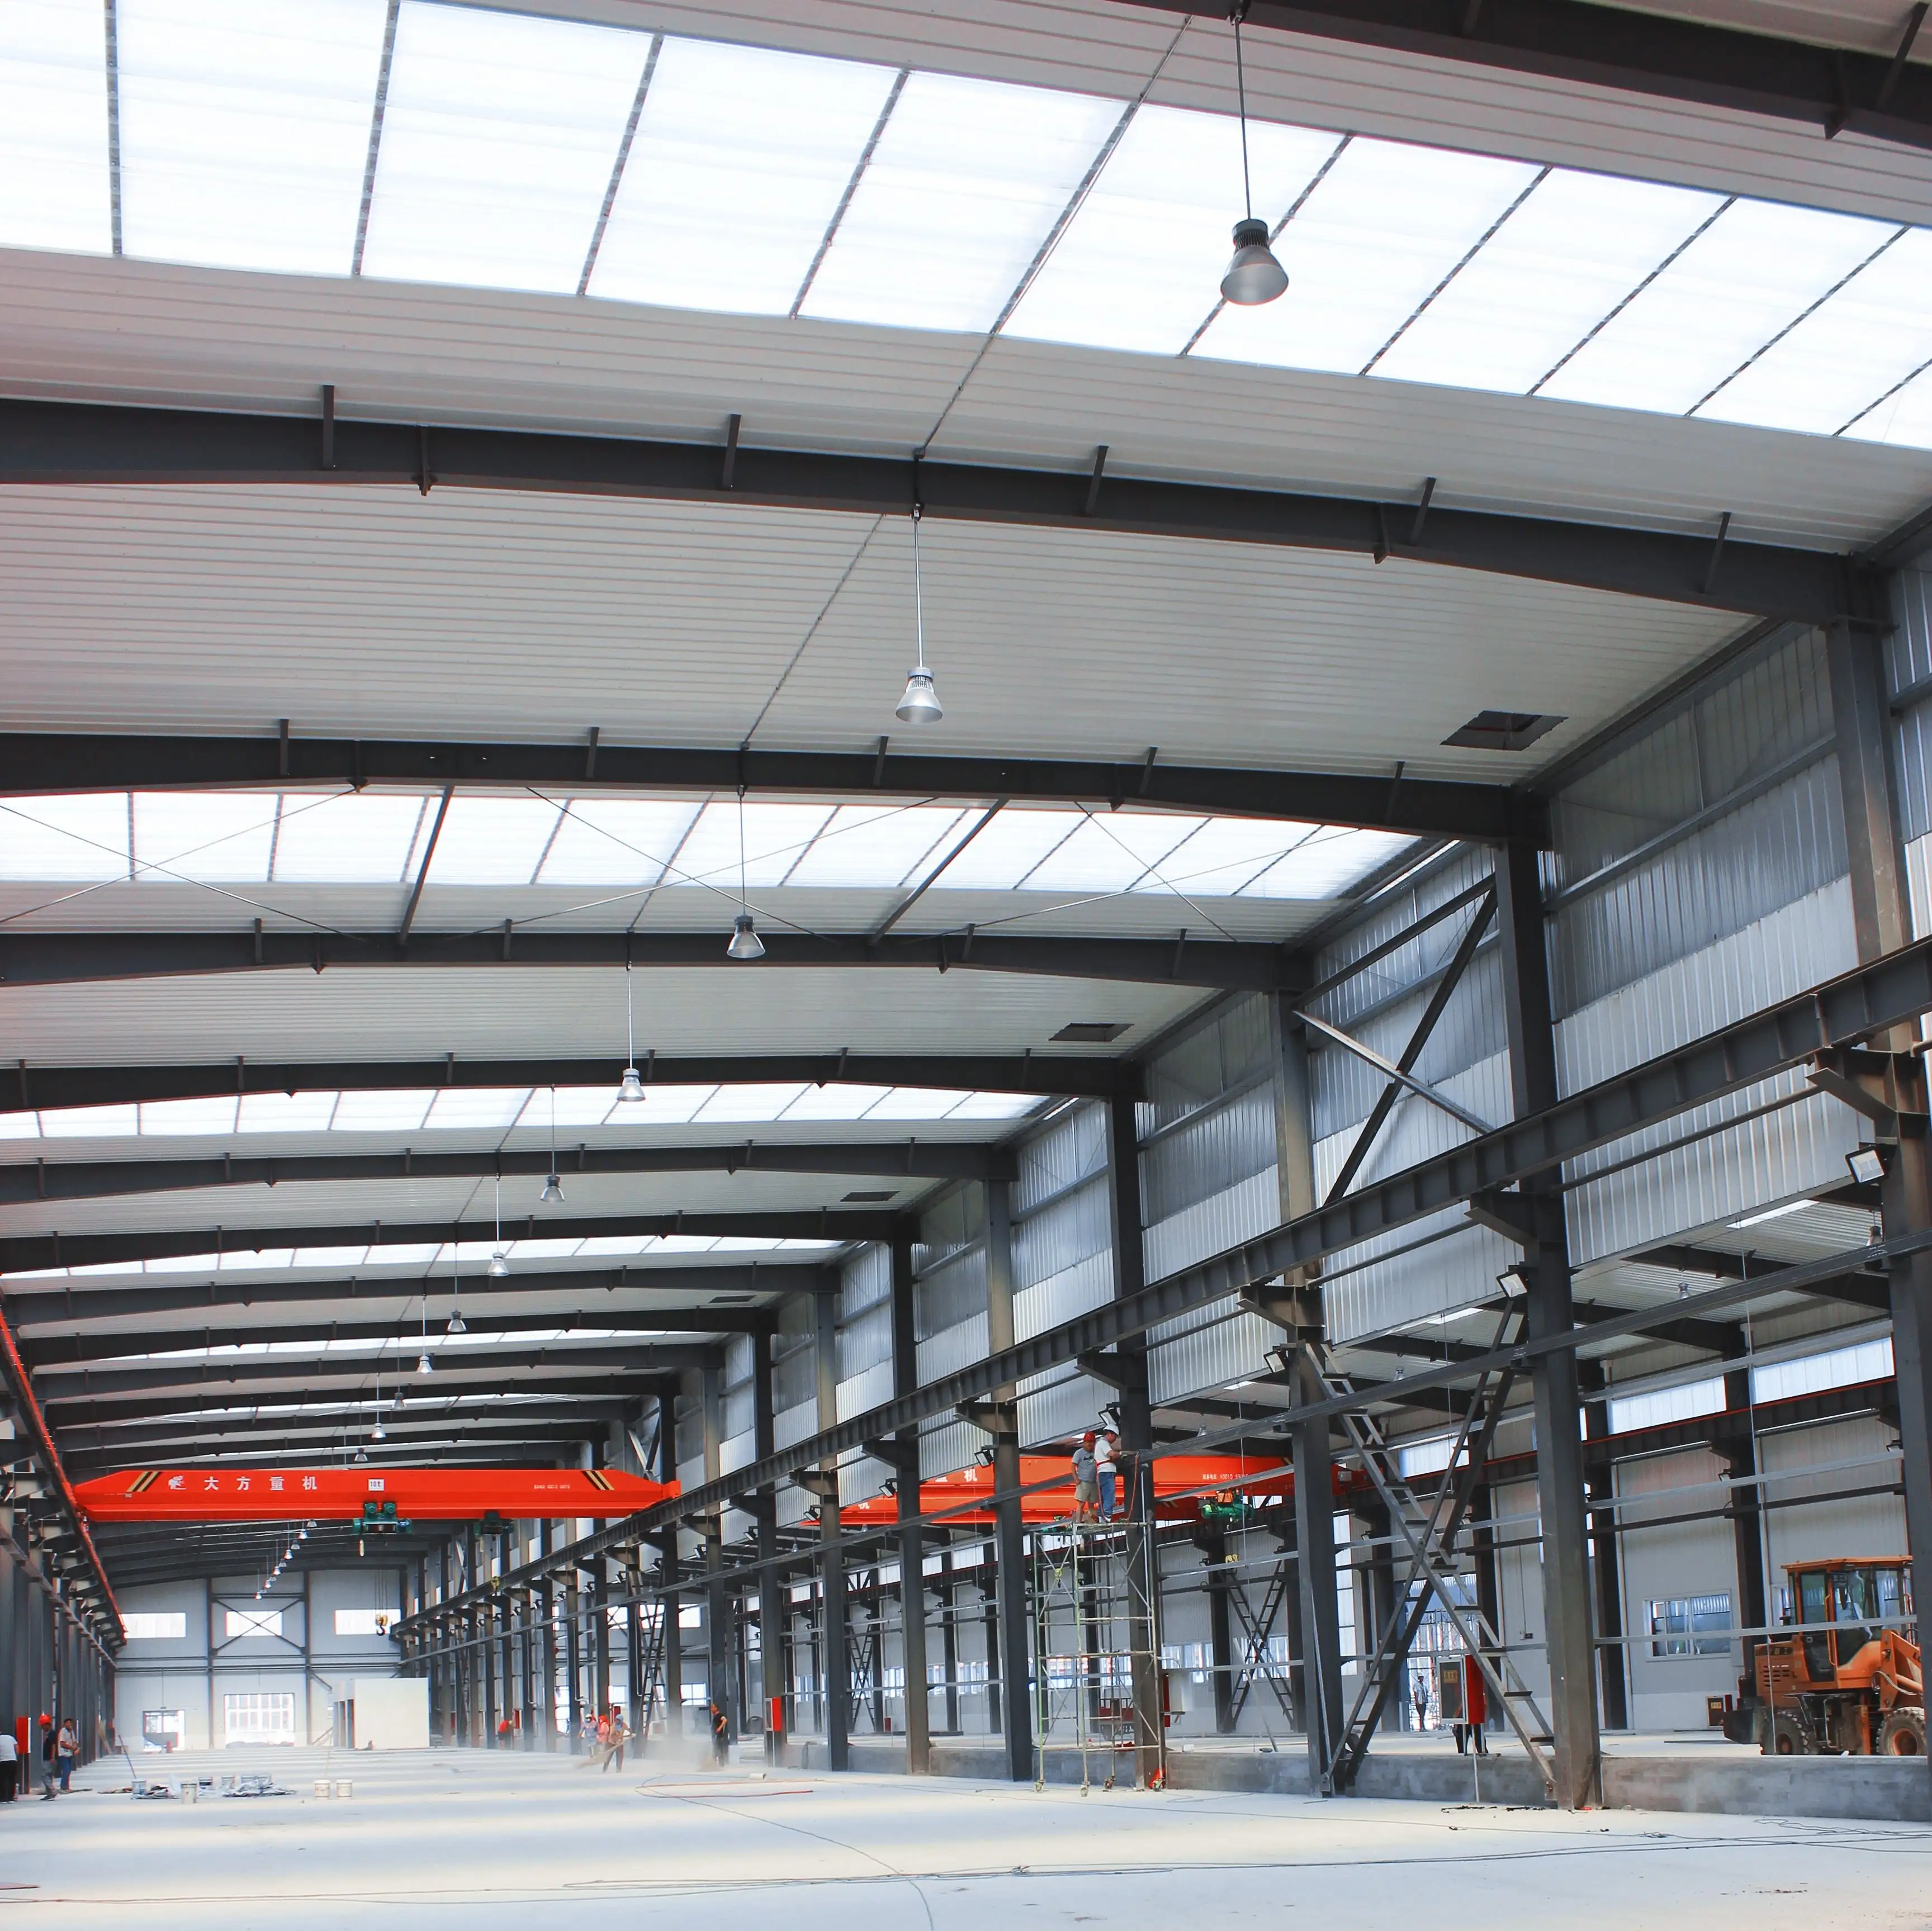 China Bau große vorgefertigte leicht verzinkte Stahl konstruktion Herstellung vorgefertigte Lager